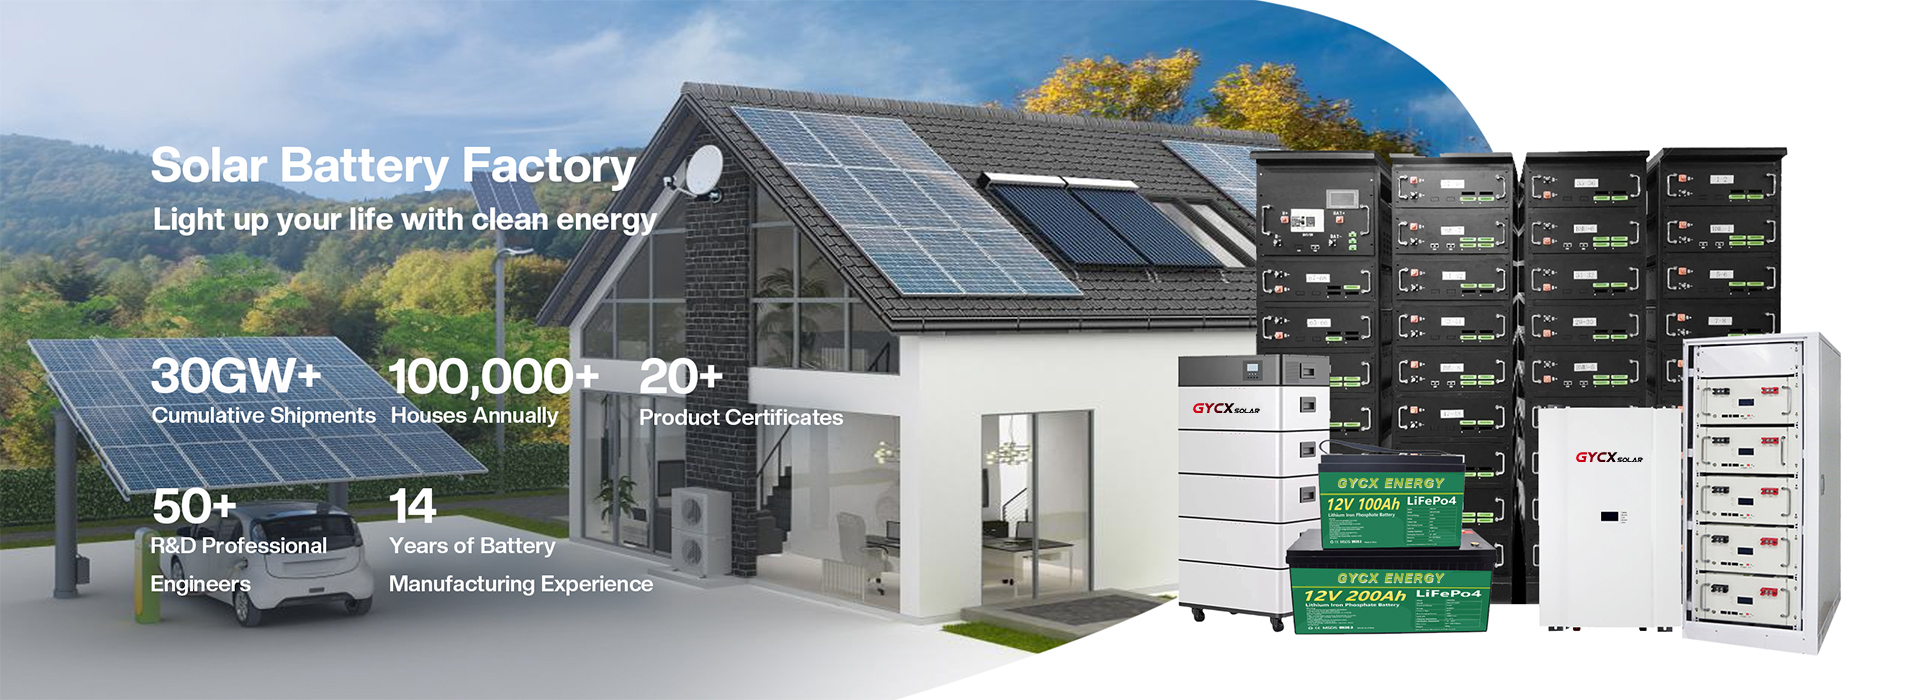 gycx solar energy battery